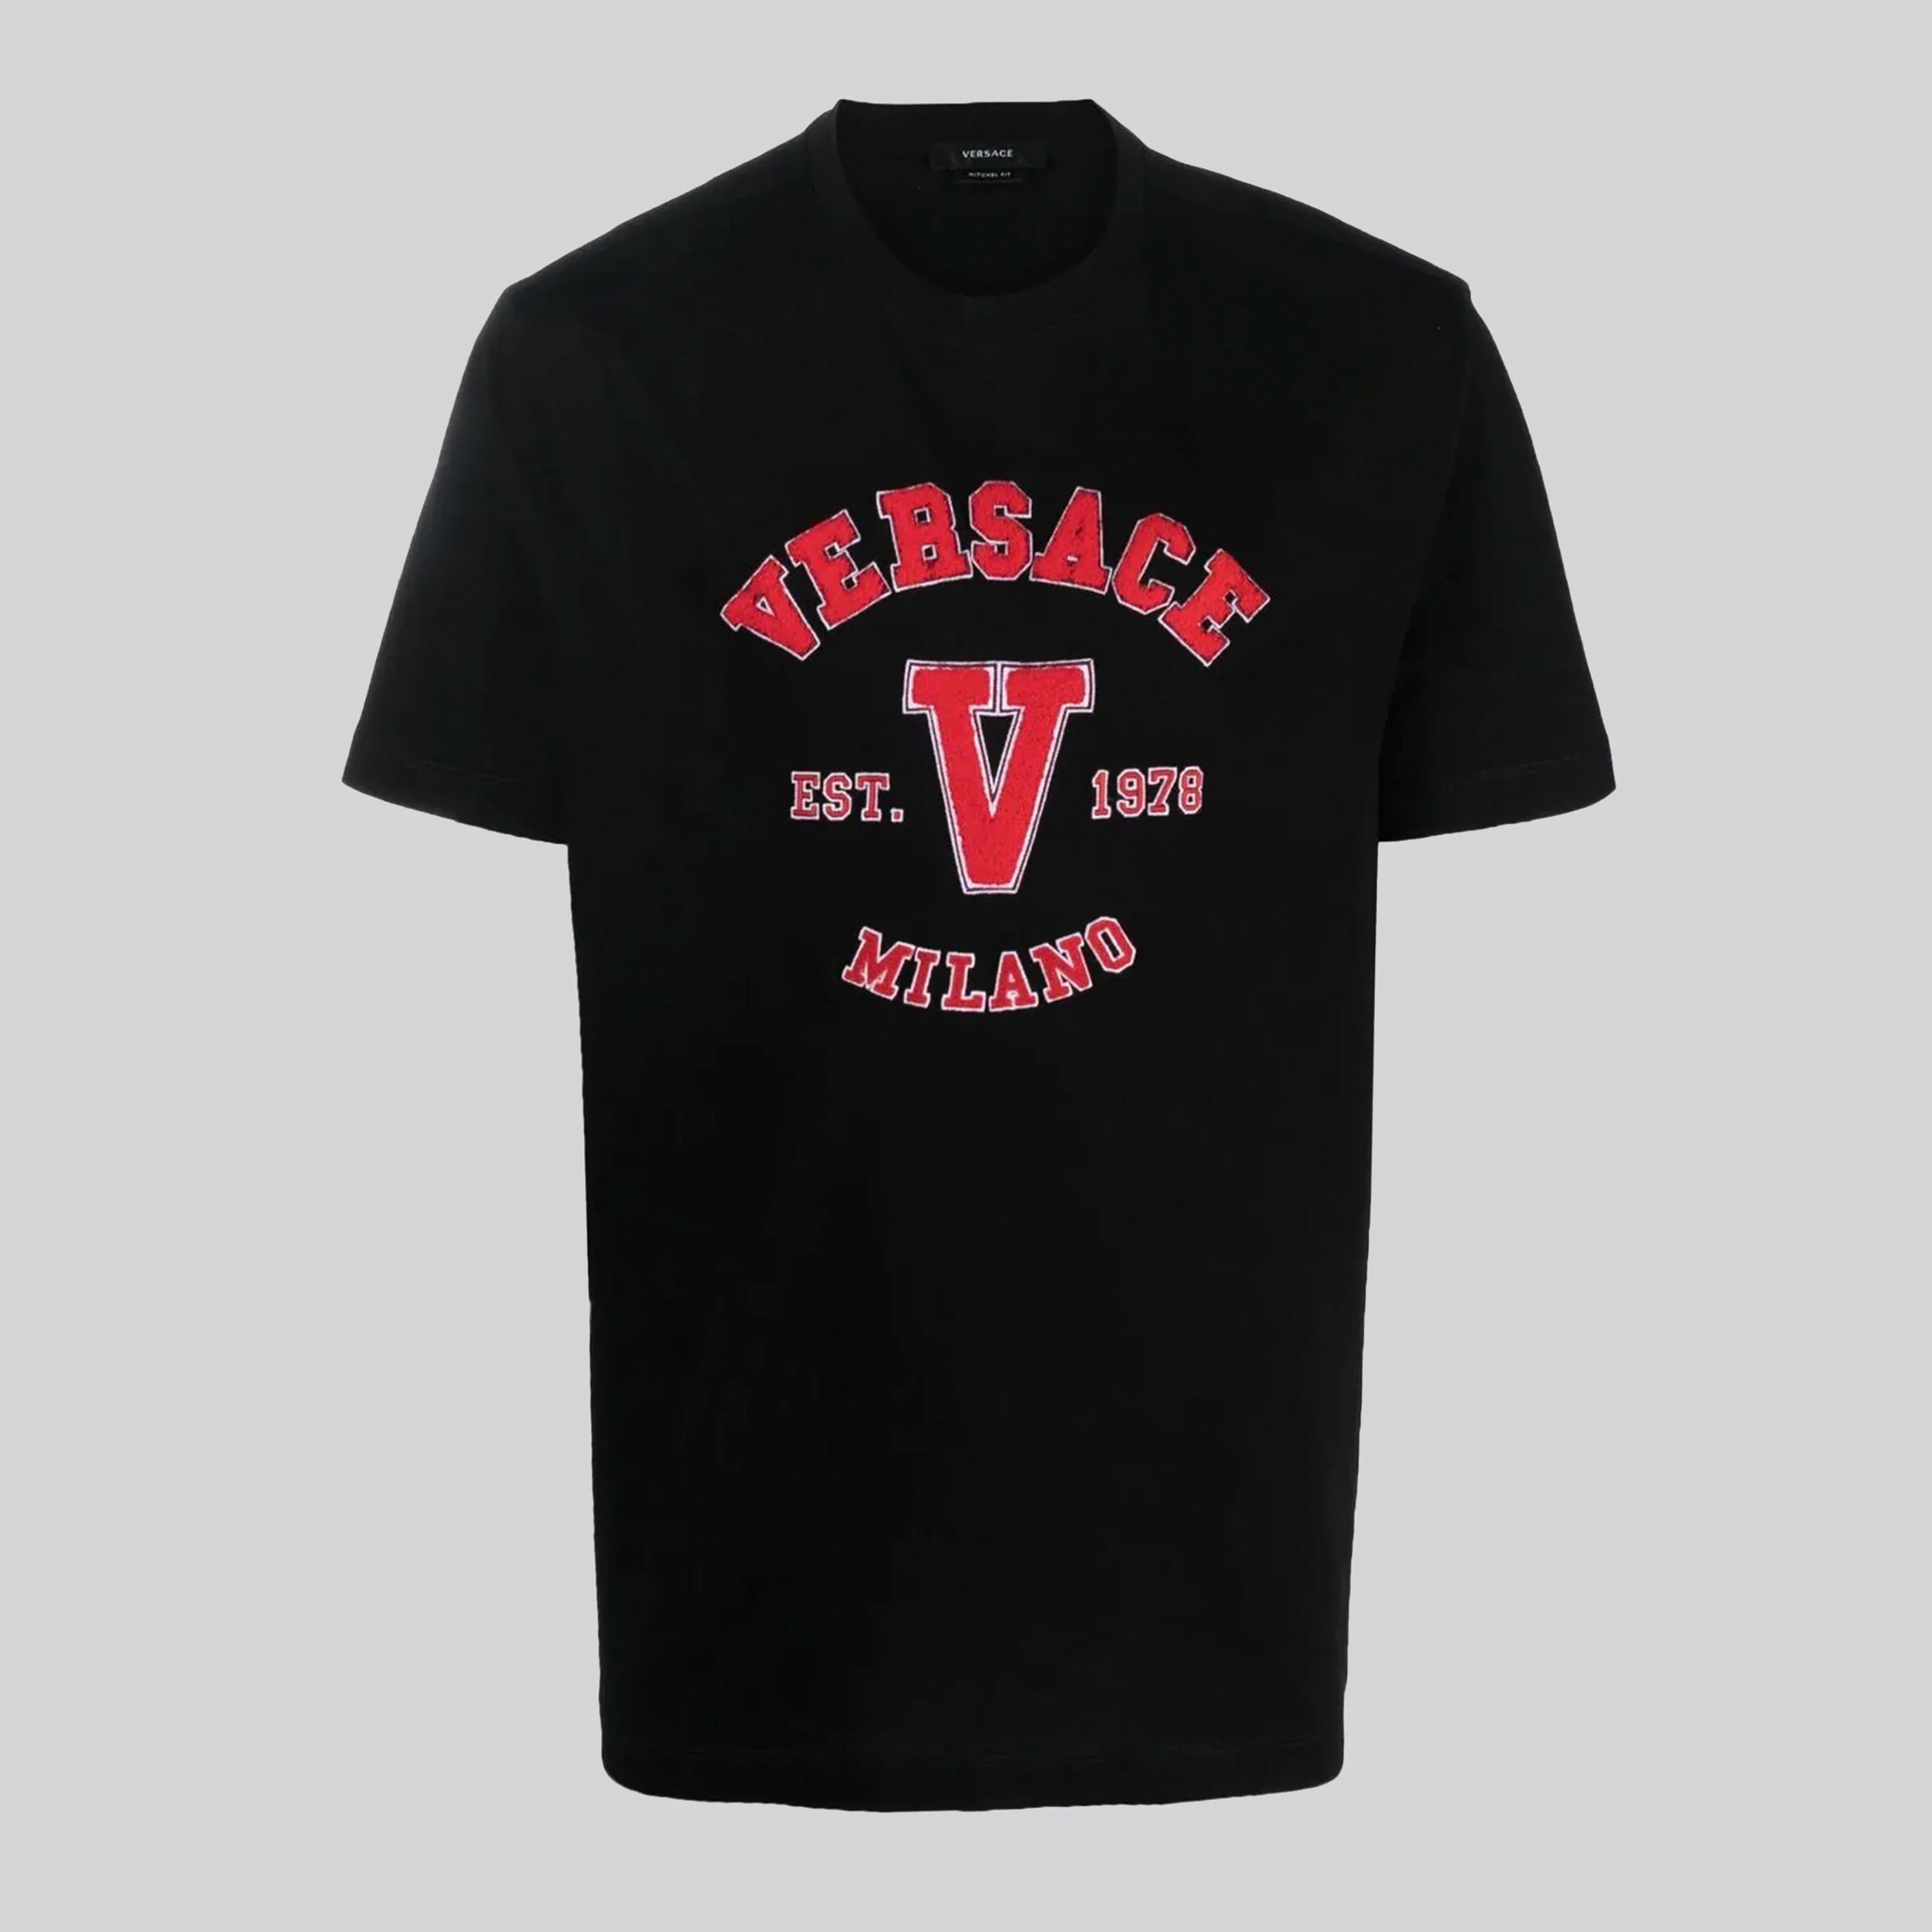 Camiseta Negra Versace Est 1978